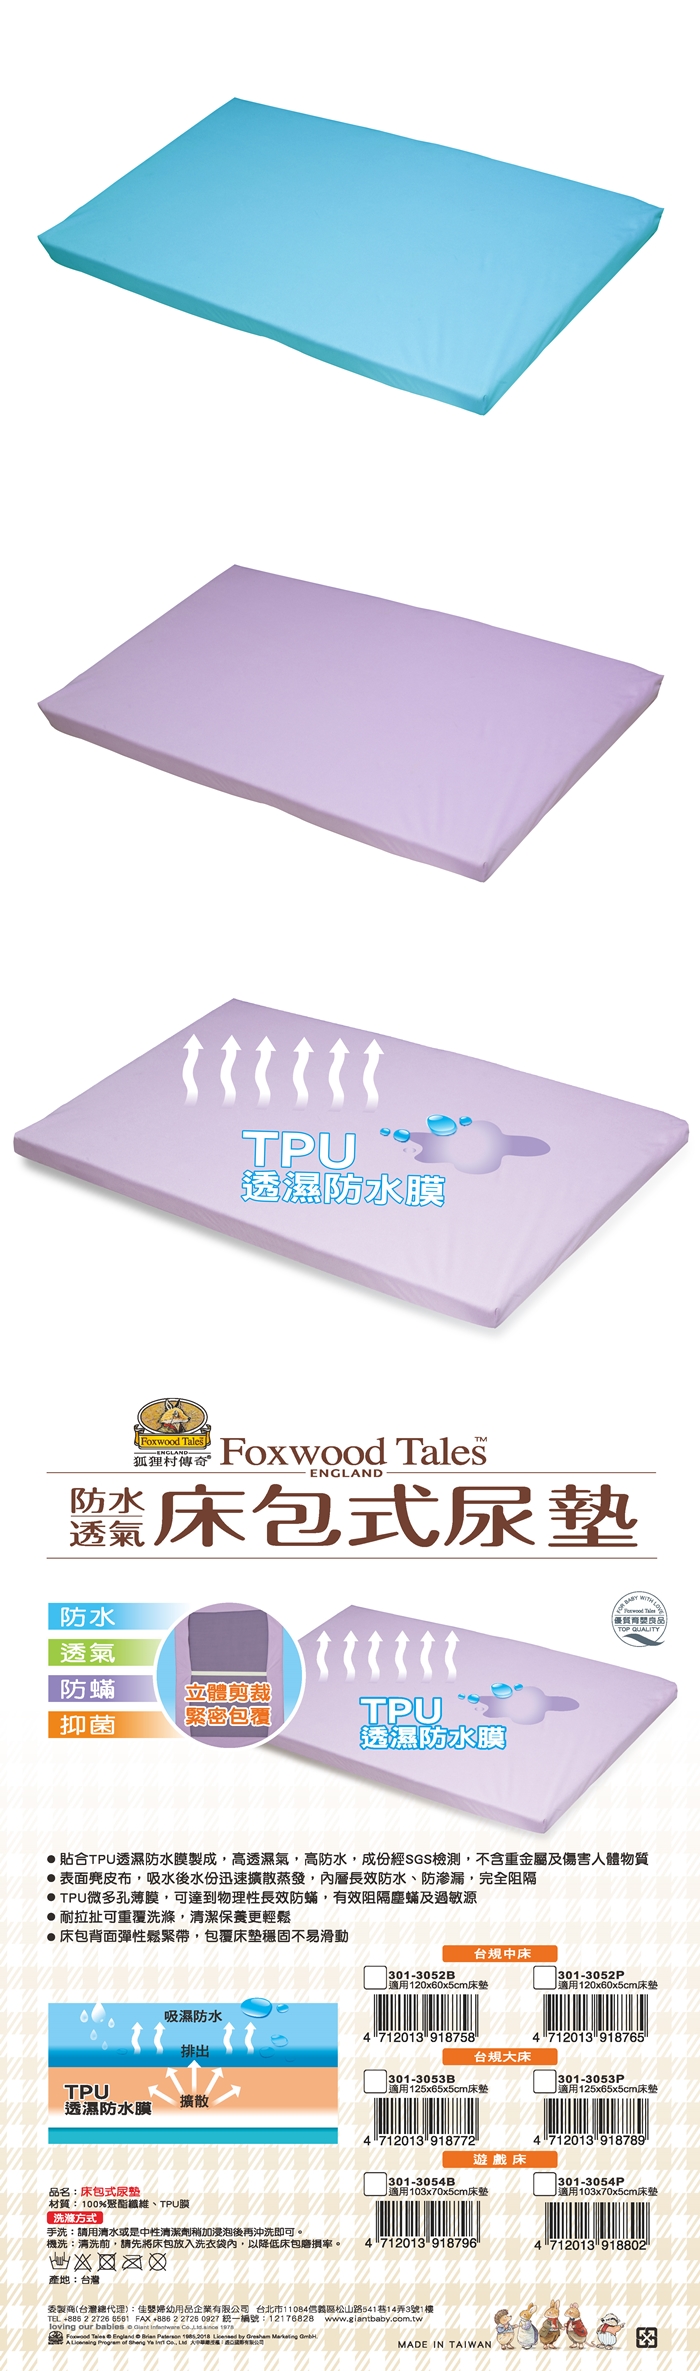 狐狸村傳奇-床包式尿墊-台規大床(藍色/紫色)301-3053